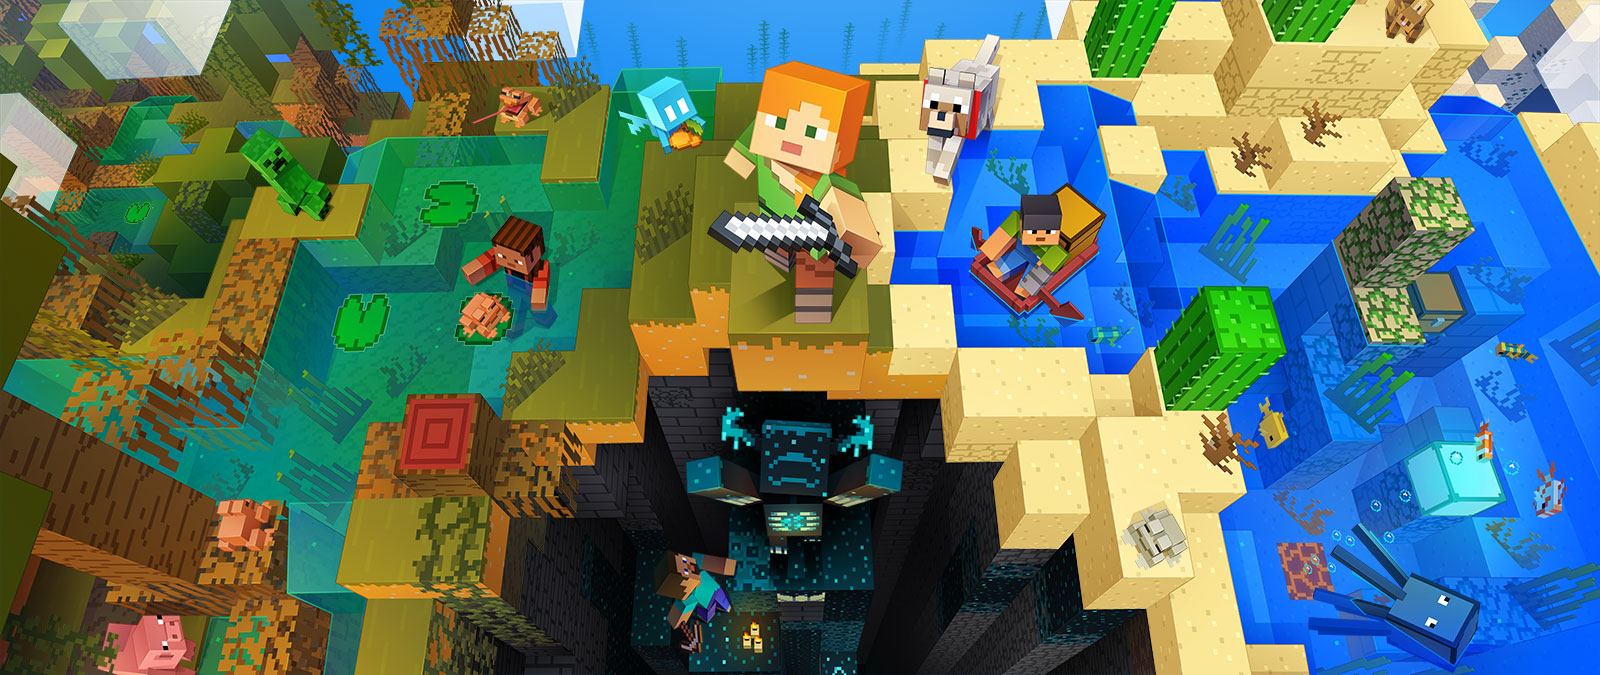 Personages uit Minecraft die verschillende activiteiten uitvoeren in Minecraft